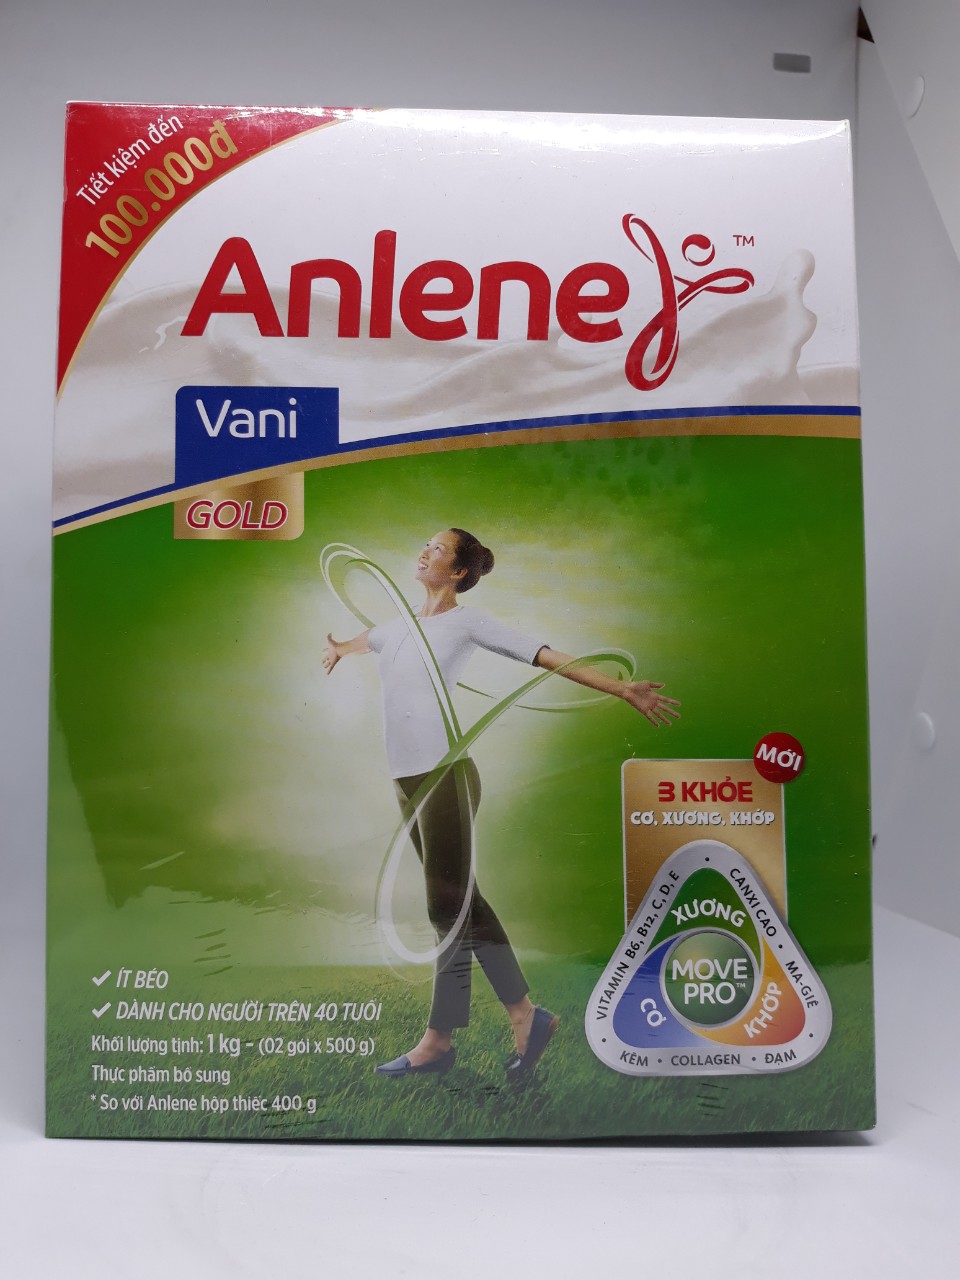 Sữa Anlene gold 3 khỏe cho người trên 40 tuổi (hộp giấy 1,2kg)